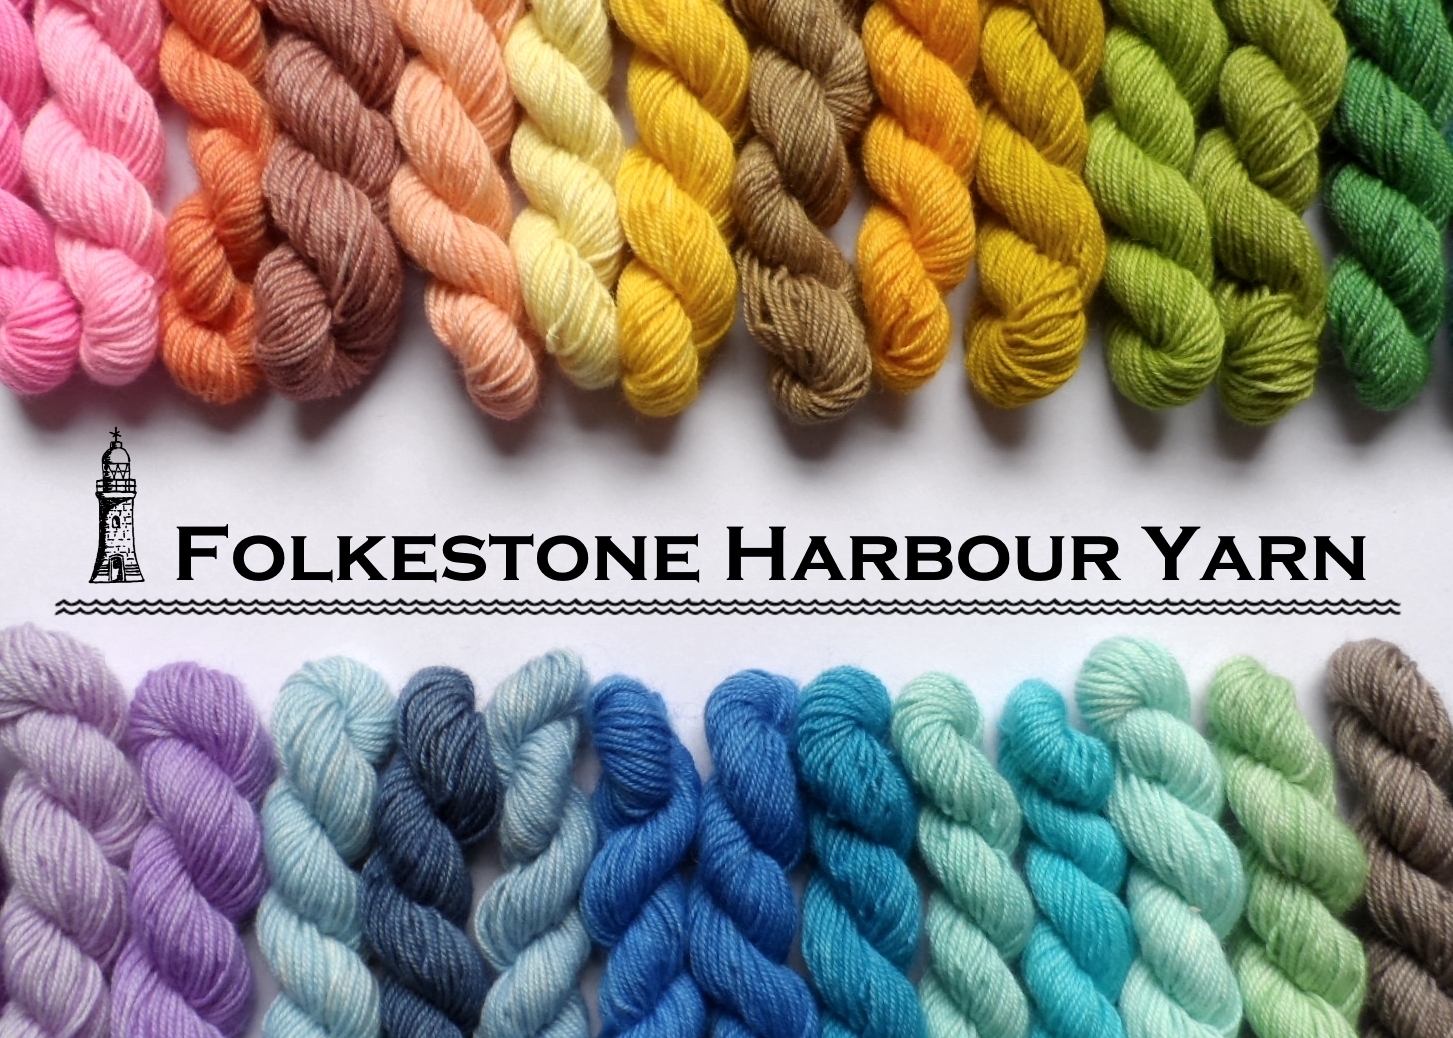 Folkestone Harbour Yarn